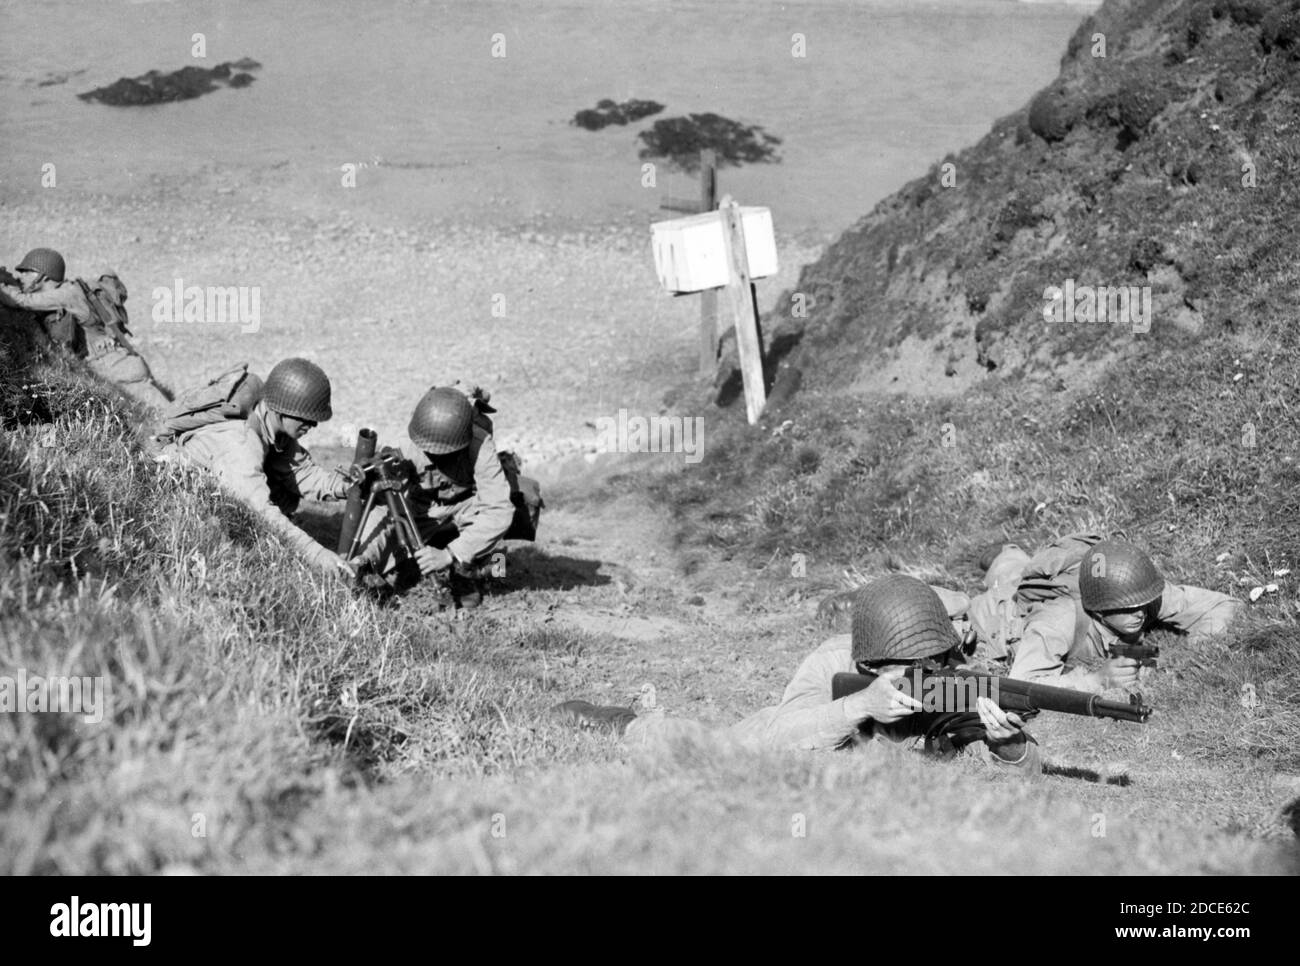 WW II - troupes de l'armée américaine lors d'un atterrissage sur la plage, à Bude, sur une côte ouest de l'Angleterre. Alors que trois hommes du 29e Bataillon des Rangers, avec des carbines, un pistolet et des sacs à dos assurent la couverture, deux autres hommes sont en cours de mise en place d'un mortier de 60 mm. Il s'agit d'une manœuvre de formation réaliste, en préparation à l'invasion européenne pleine d'espoir. Pour voir mes autres images WW II, Sea+rch: Prestor vintage WW II Banque D'Images